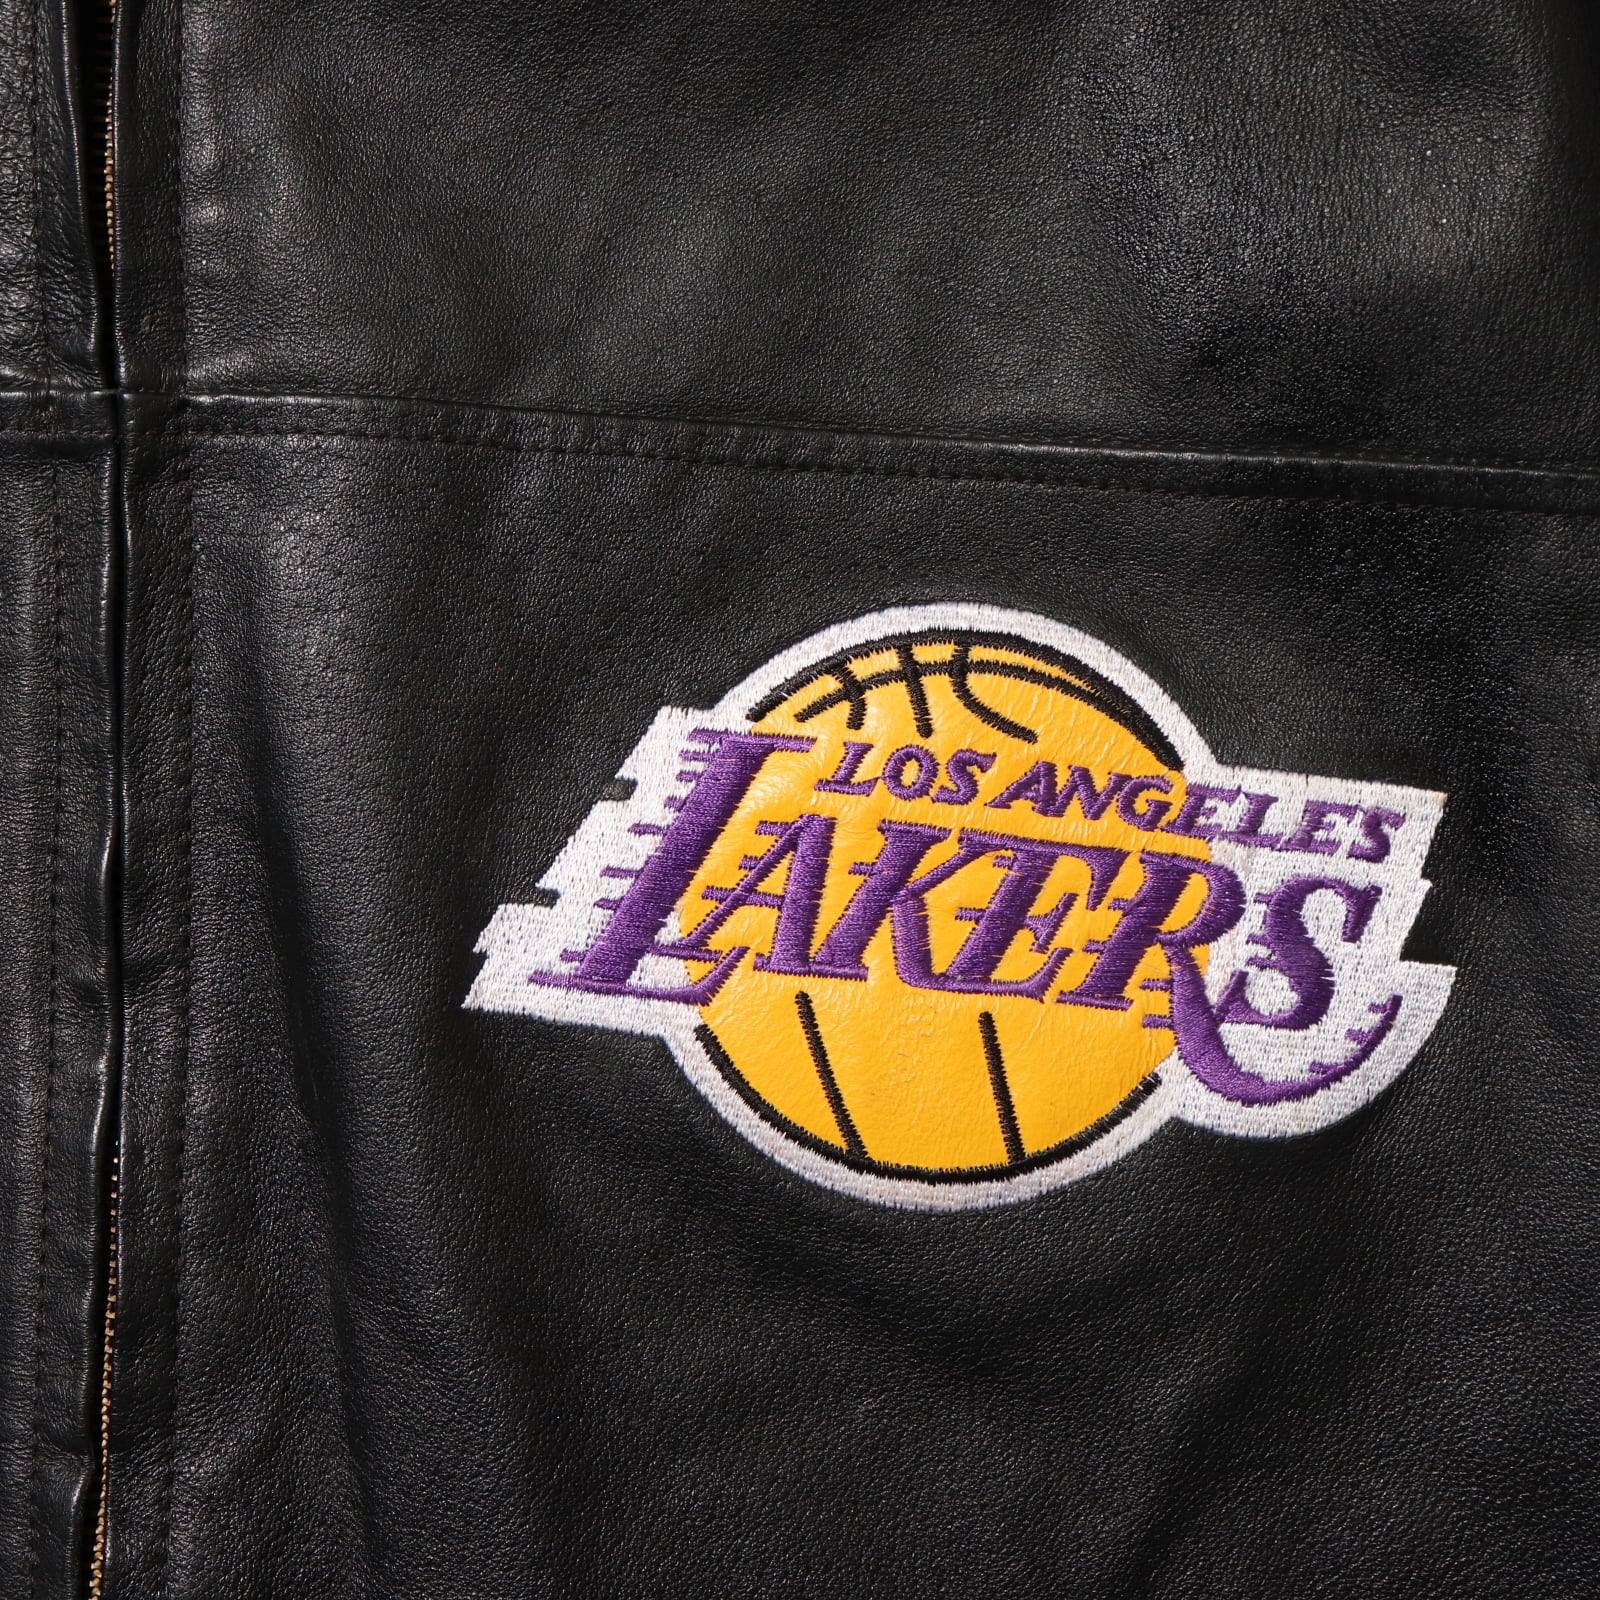 美品 XL Los Angeles Lakers 総刺繍 本革 レザージャケット レイカーズ